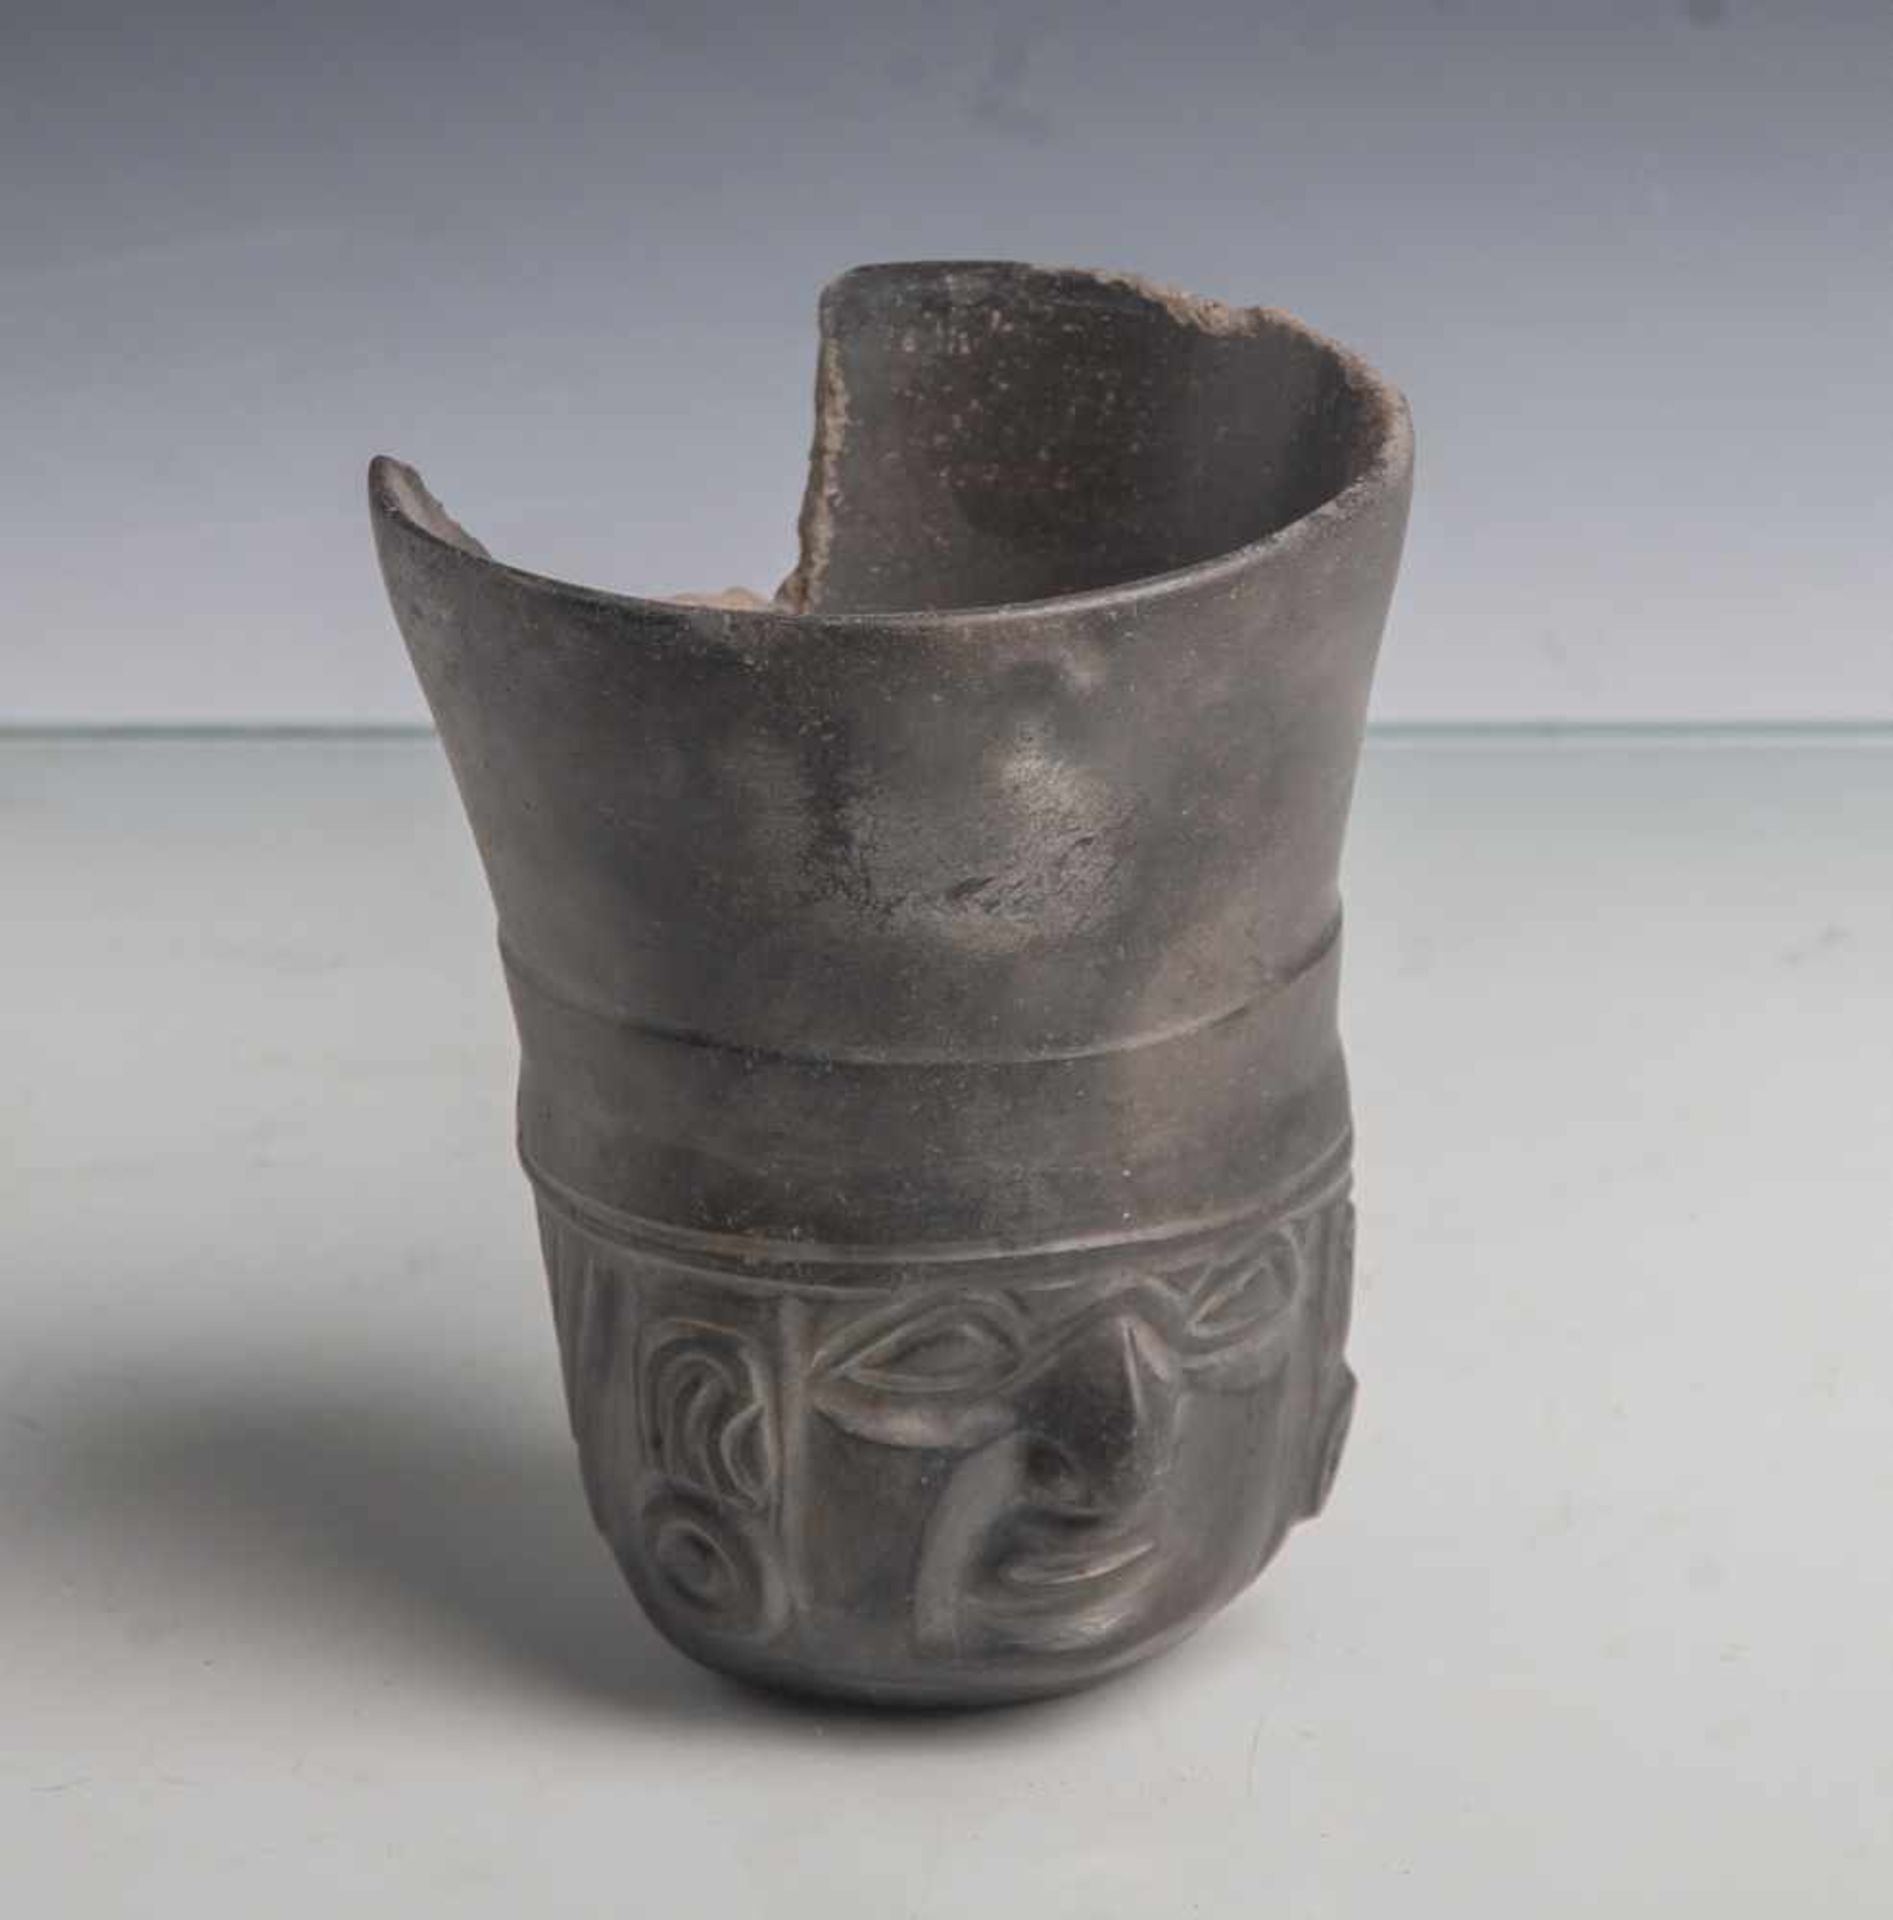 Keramikbecher (Mexiko, Moche-Kultur), schwarze Keramik in Form eines Männerkopfs, nachoben leicht